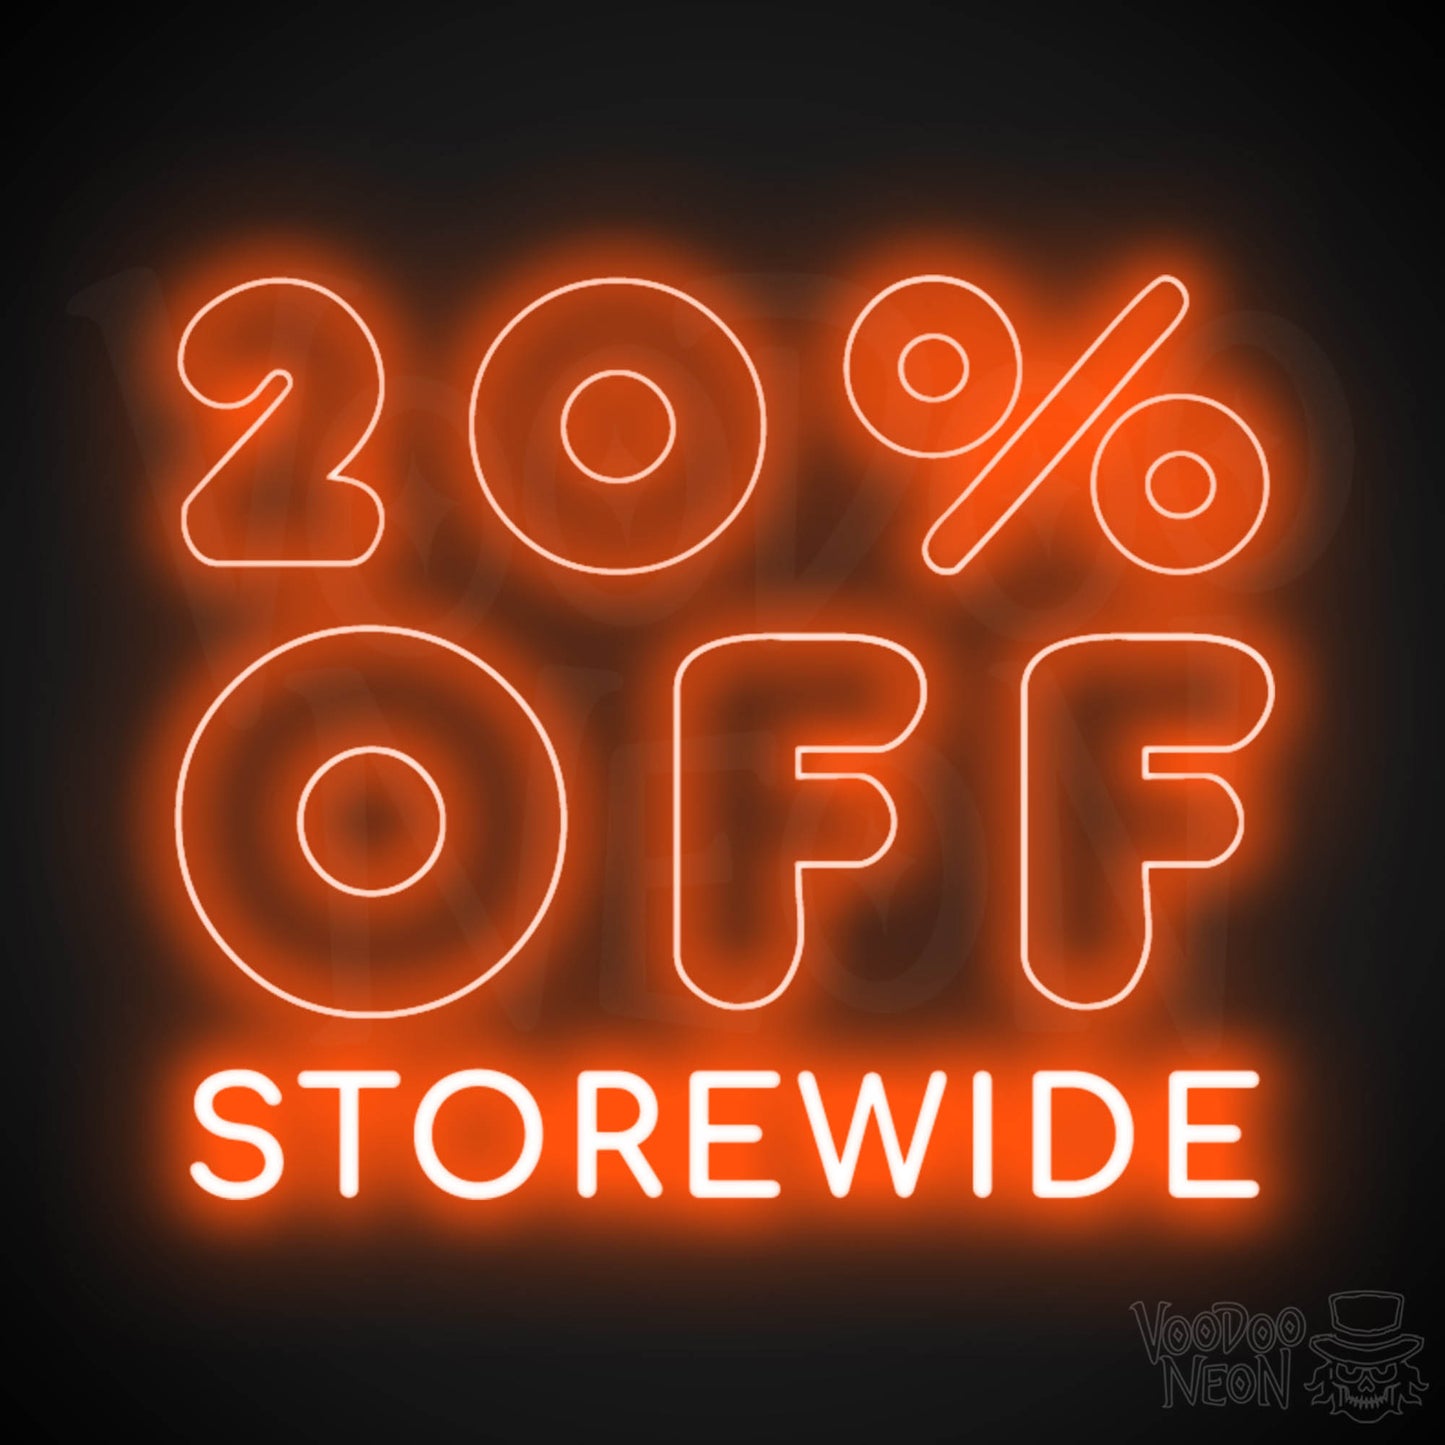 20% Off Storewide Neon Sign - 20% Off Storewide Sign - LED Shop Sign - Color Orange